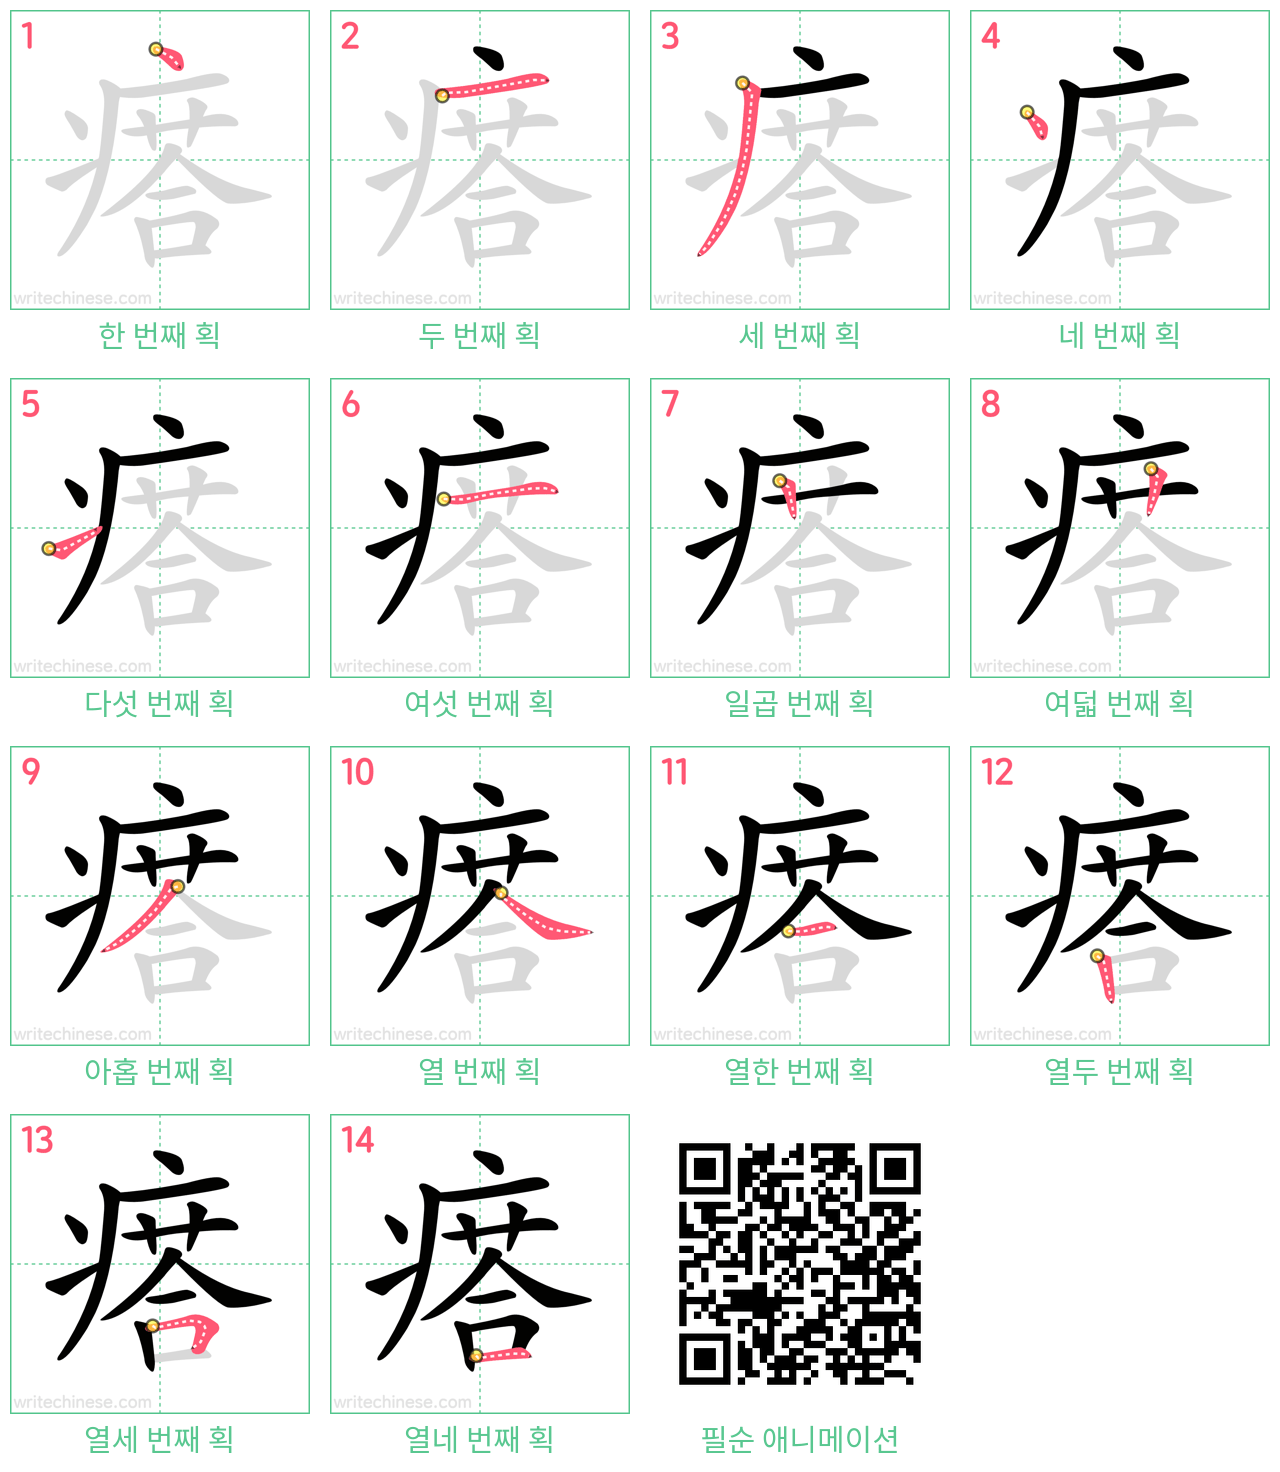 瘩 step-by-step stroke order diagrams